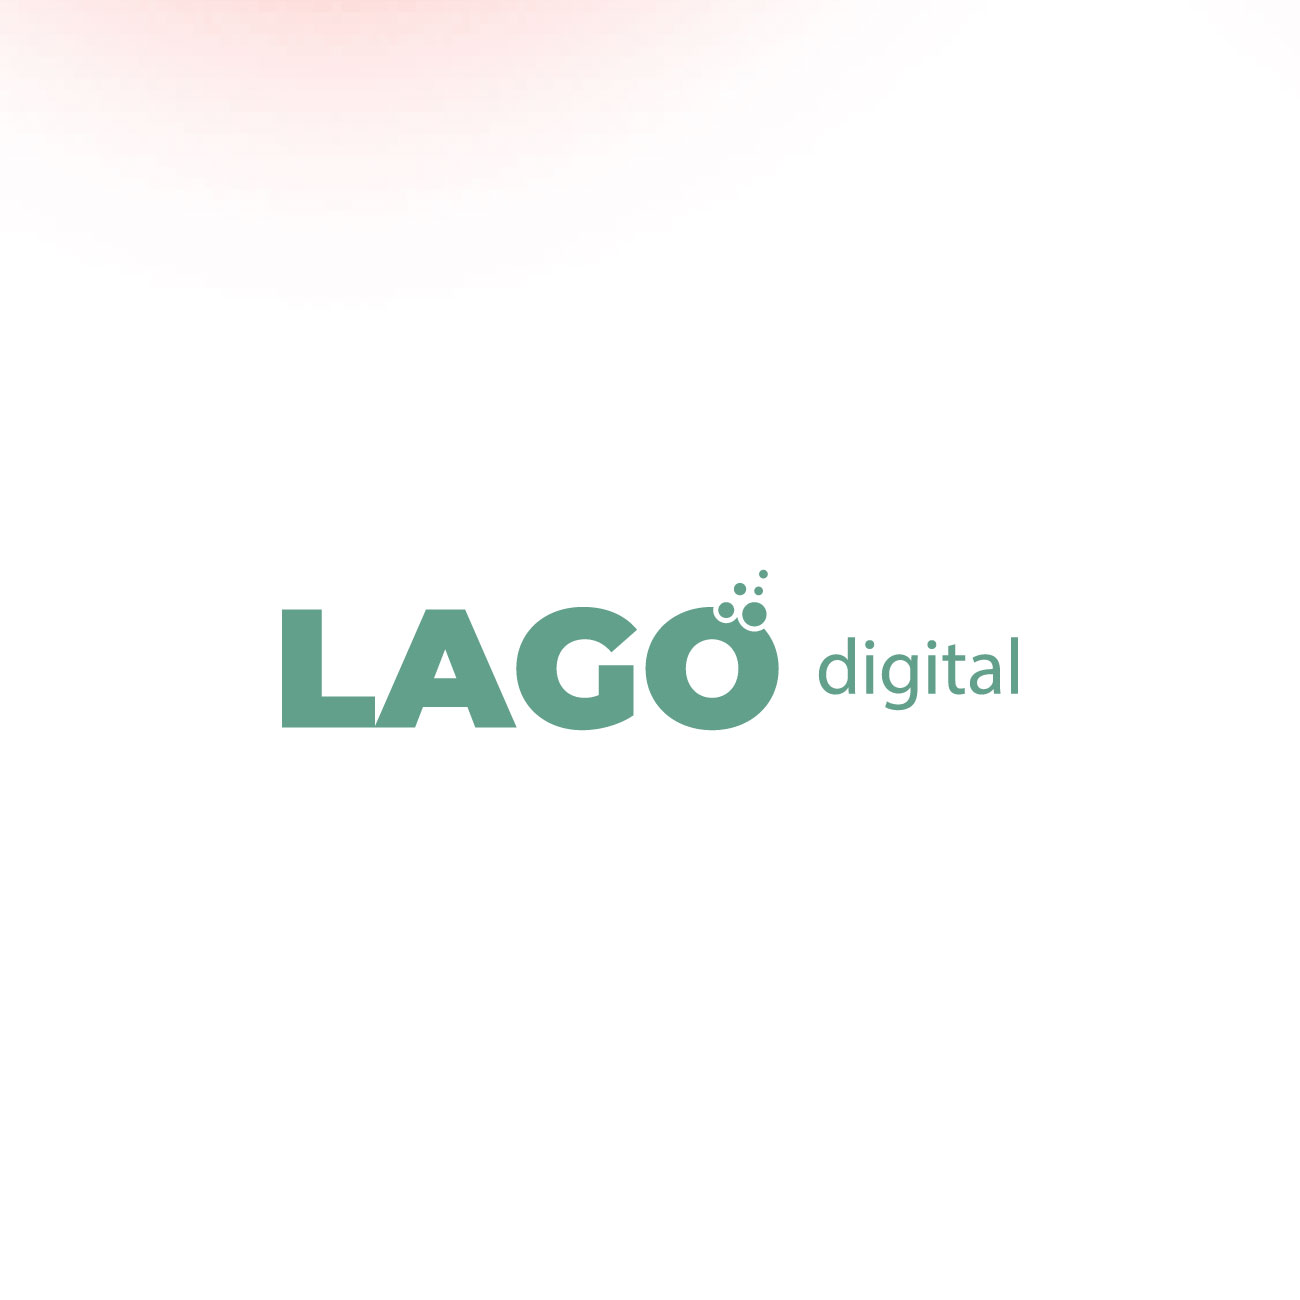 Lago Digital